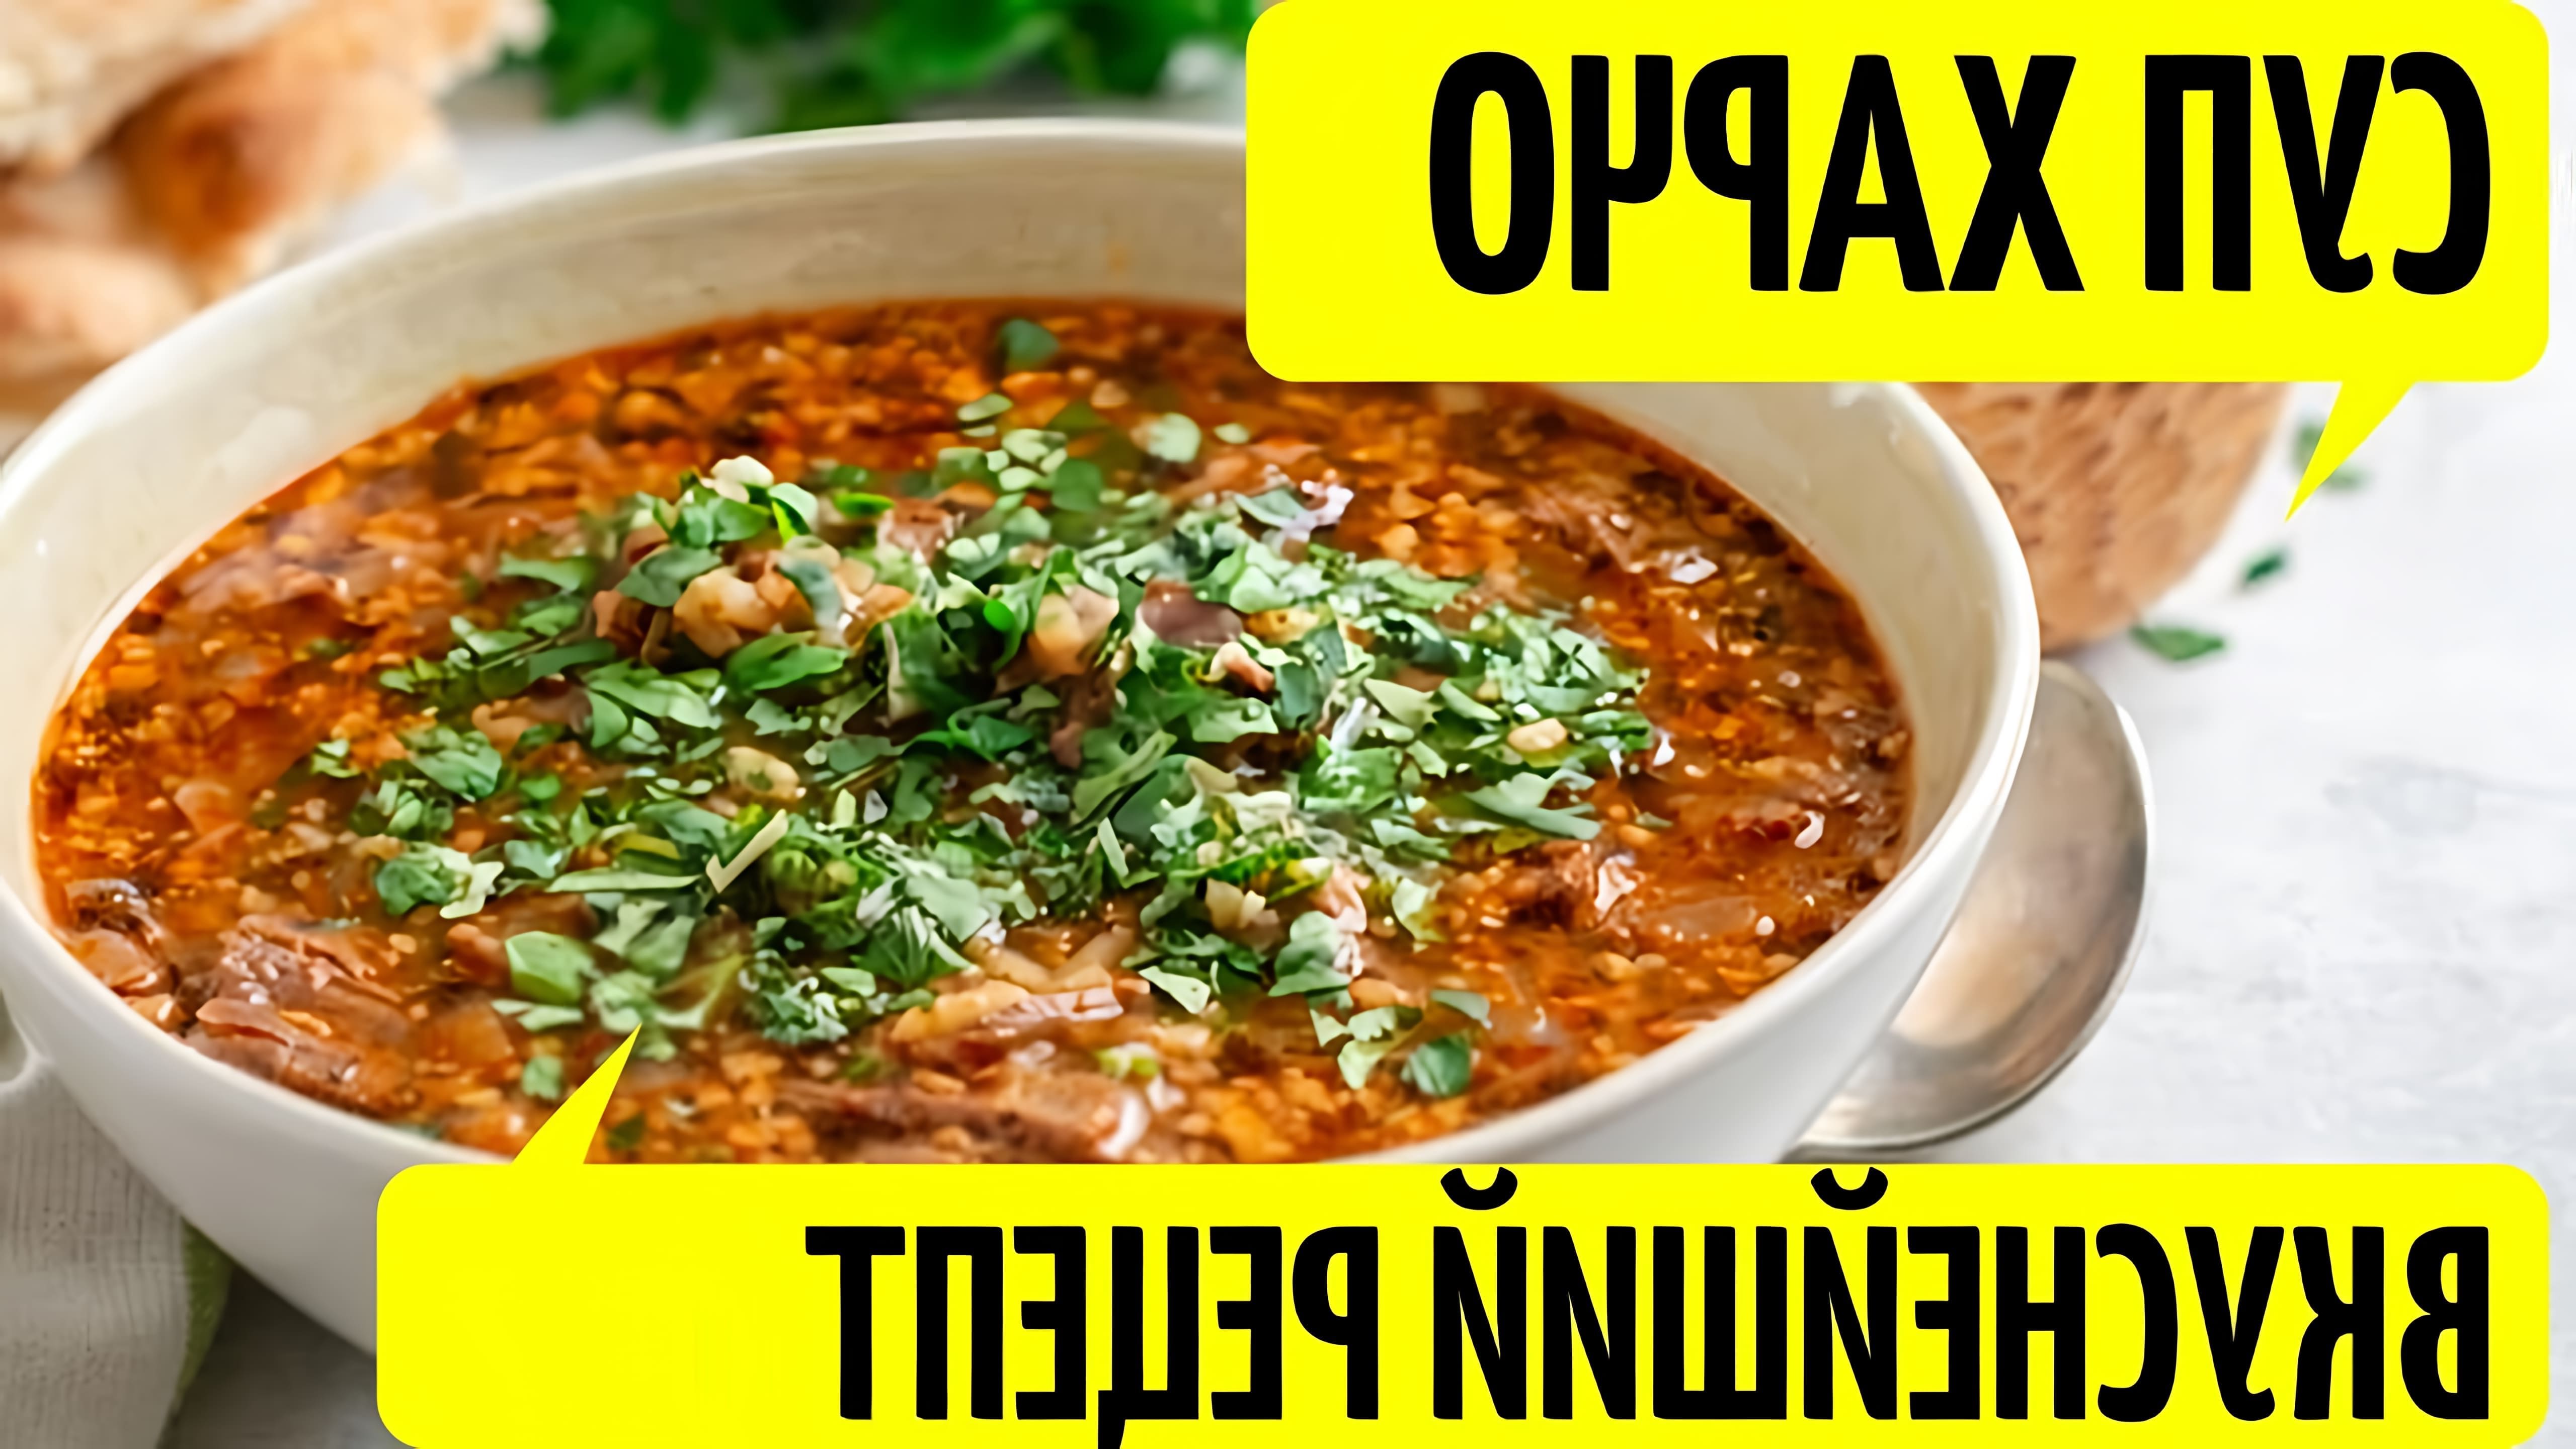 В этом видео подробно описывается рецепт приготовления грузинского супа харчо